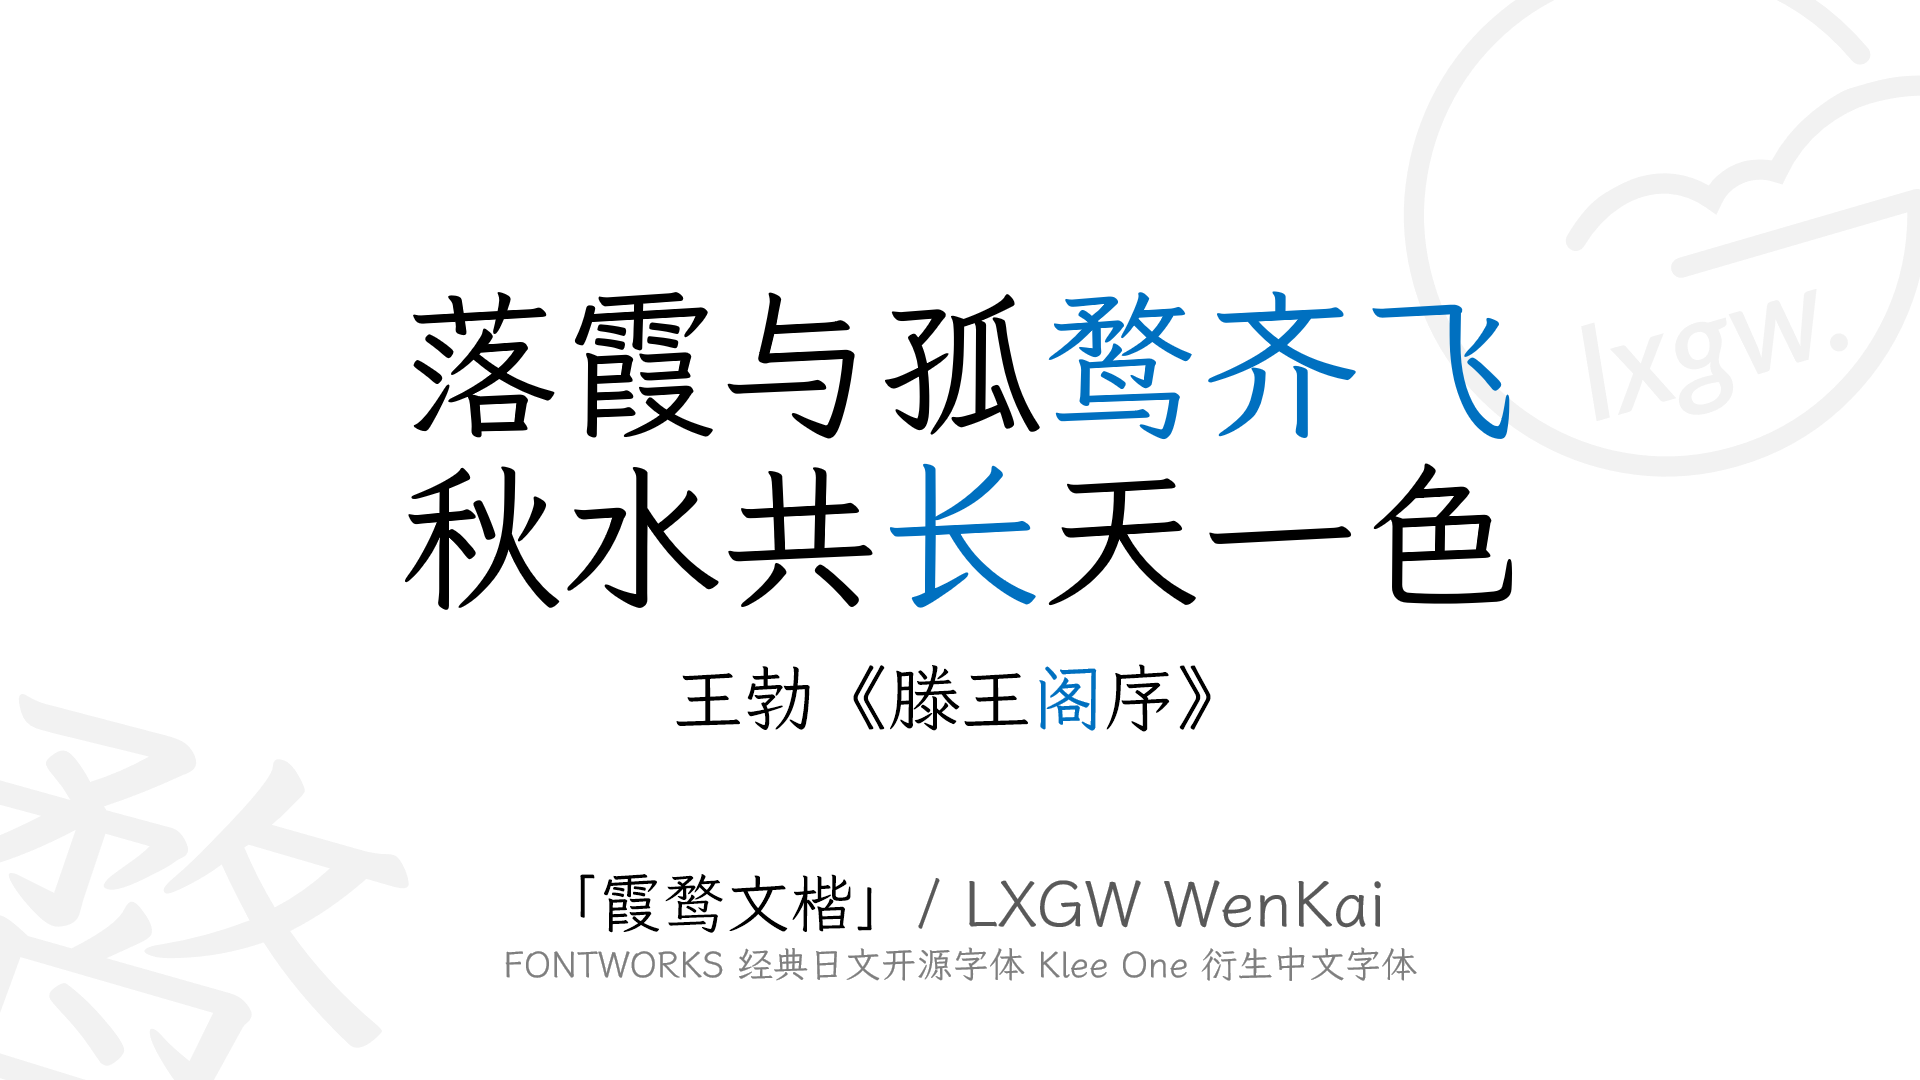 霞鹜文楷0.1 版已发布！ — LXGW · 落霞与孤鹜齐飞，秋水共长天一色。